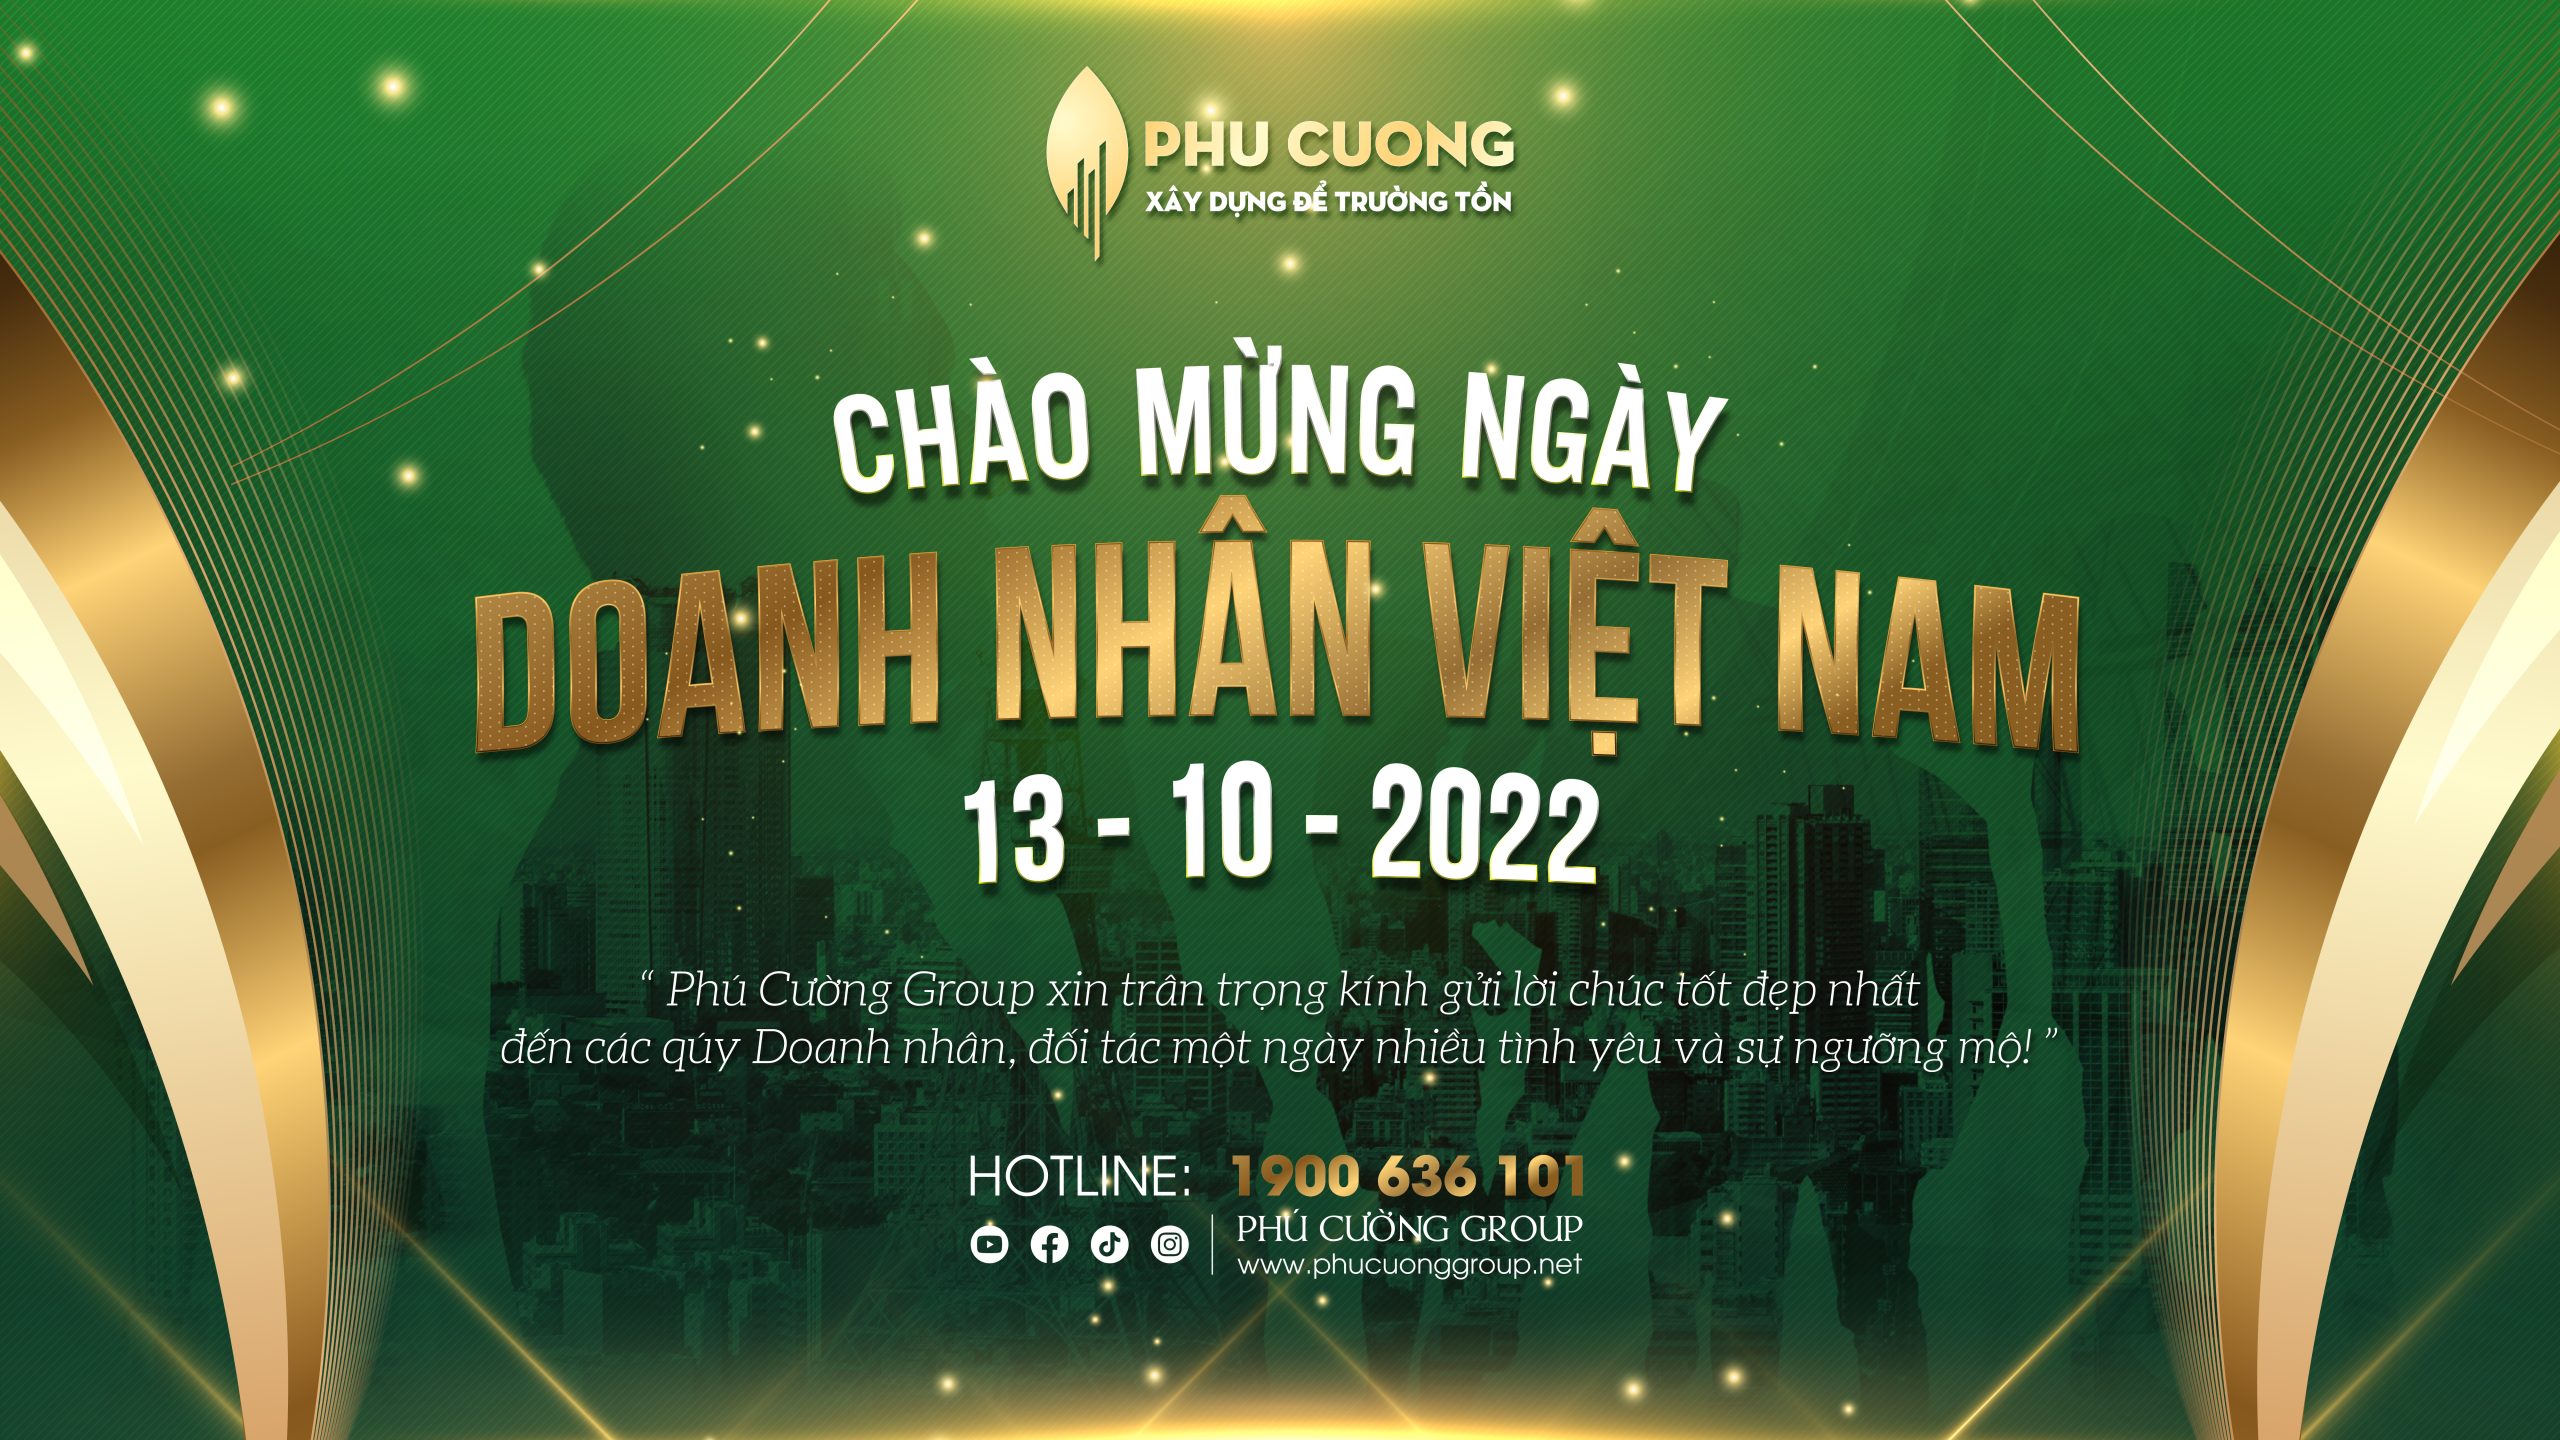 Chúc mừng ngày Doanh nhân Việt Nam 13-10